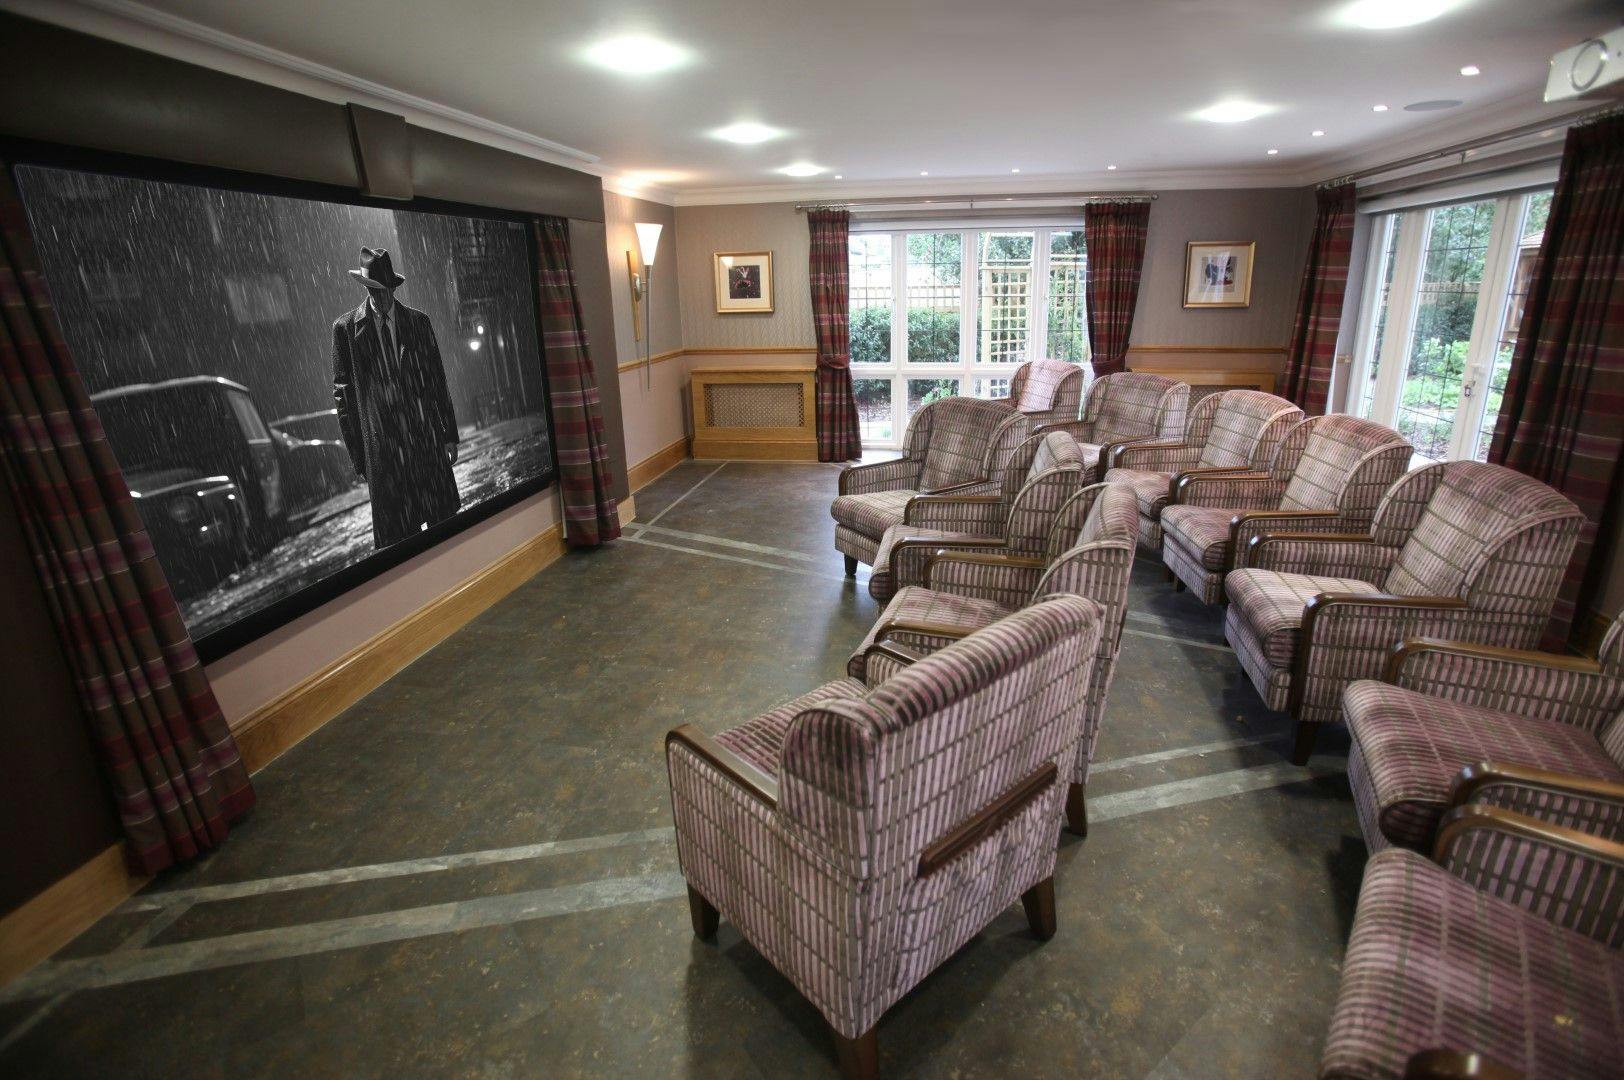 Cinema at Anisha Grange Care Home in Billericay, Basildon